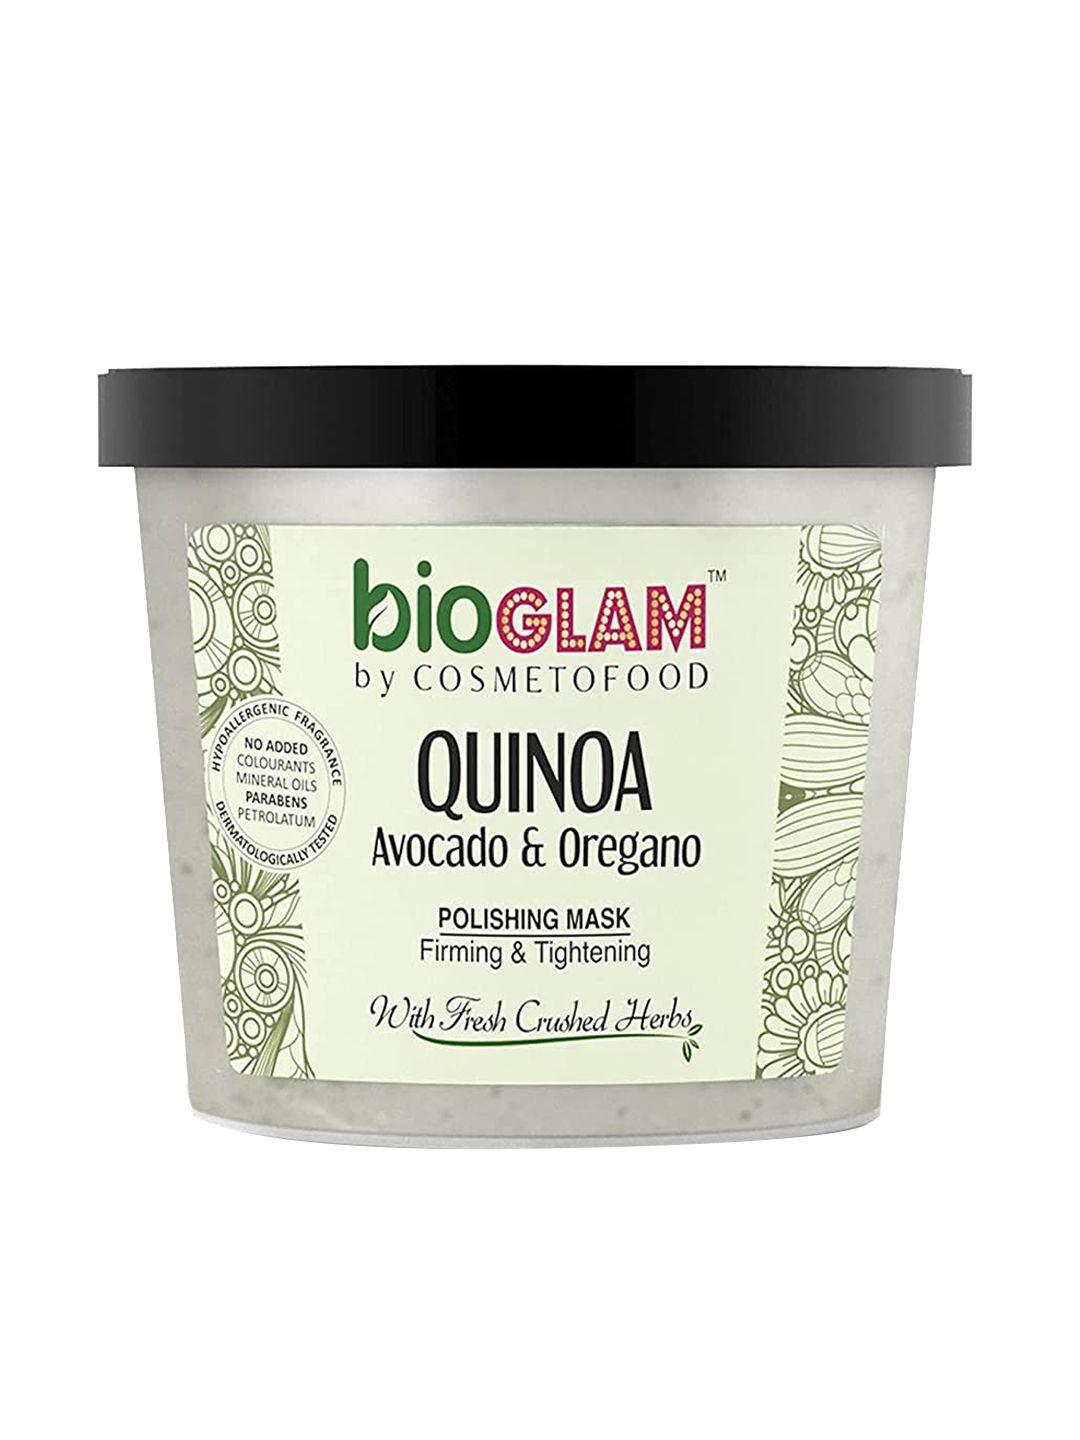 cosmetofood bioglam quinoa avocado & oregano polishing mask firming & tightening 100 ml